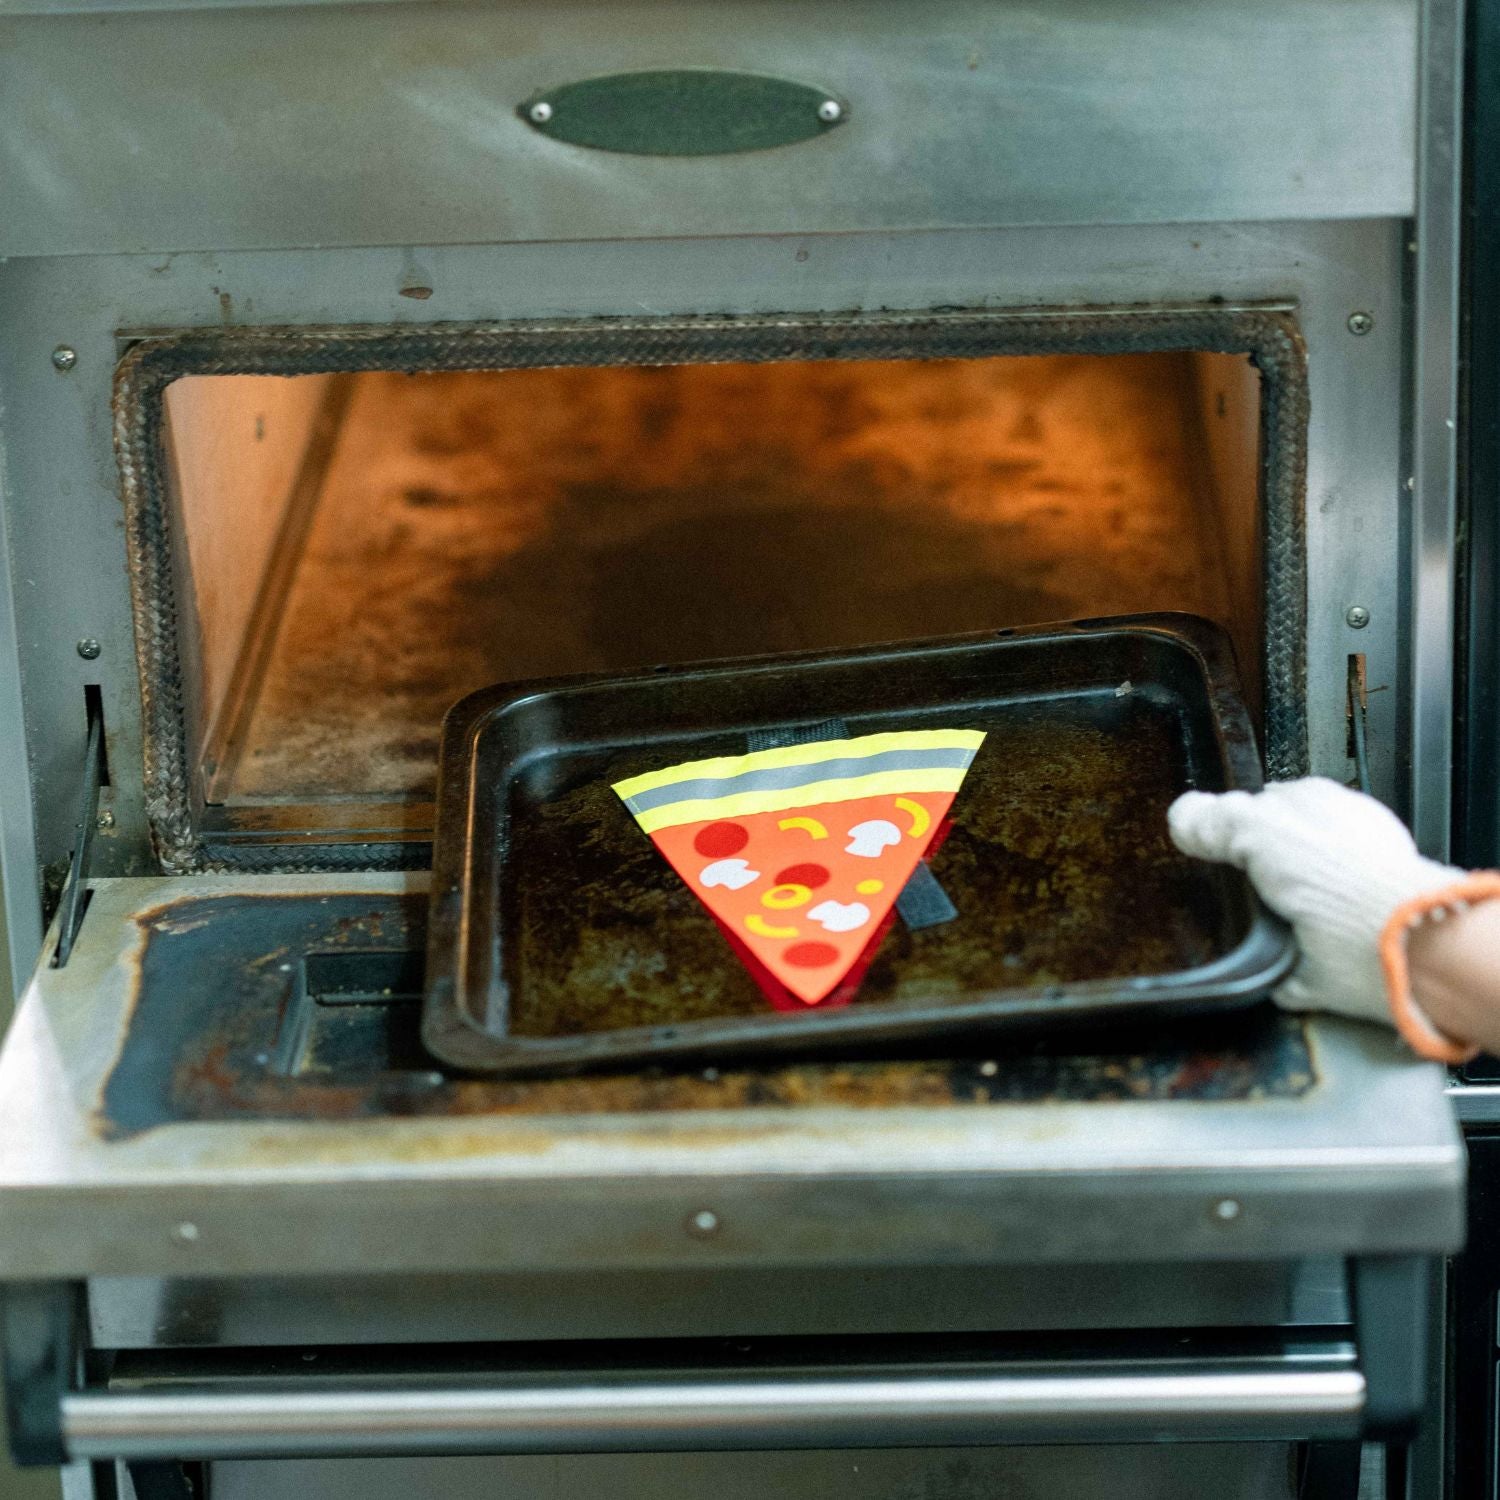 SAFETY PIZZA Safety Pizza